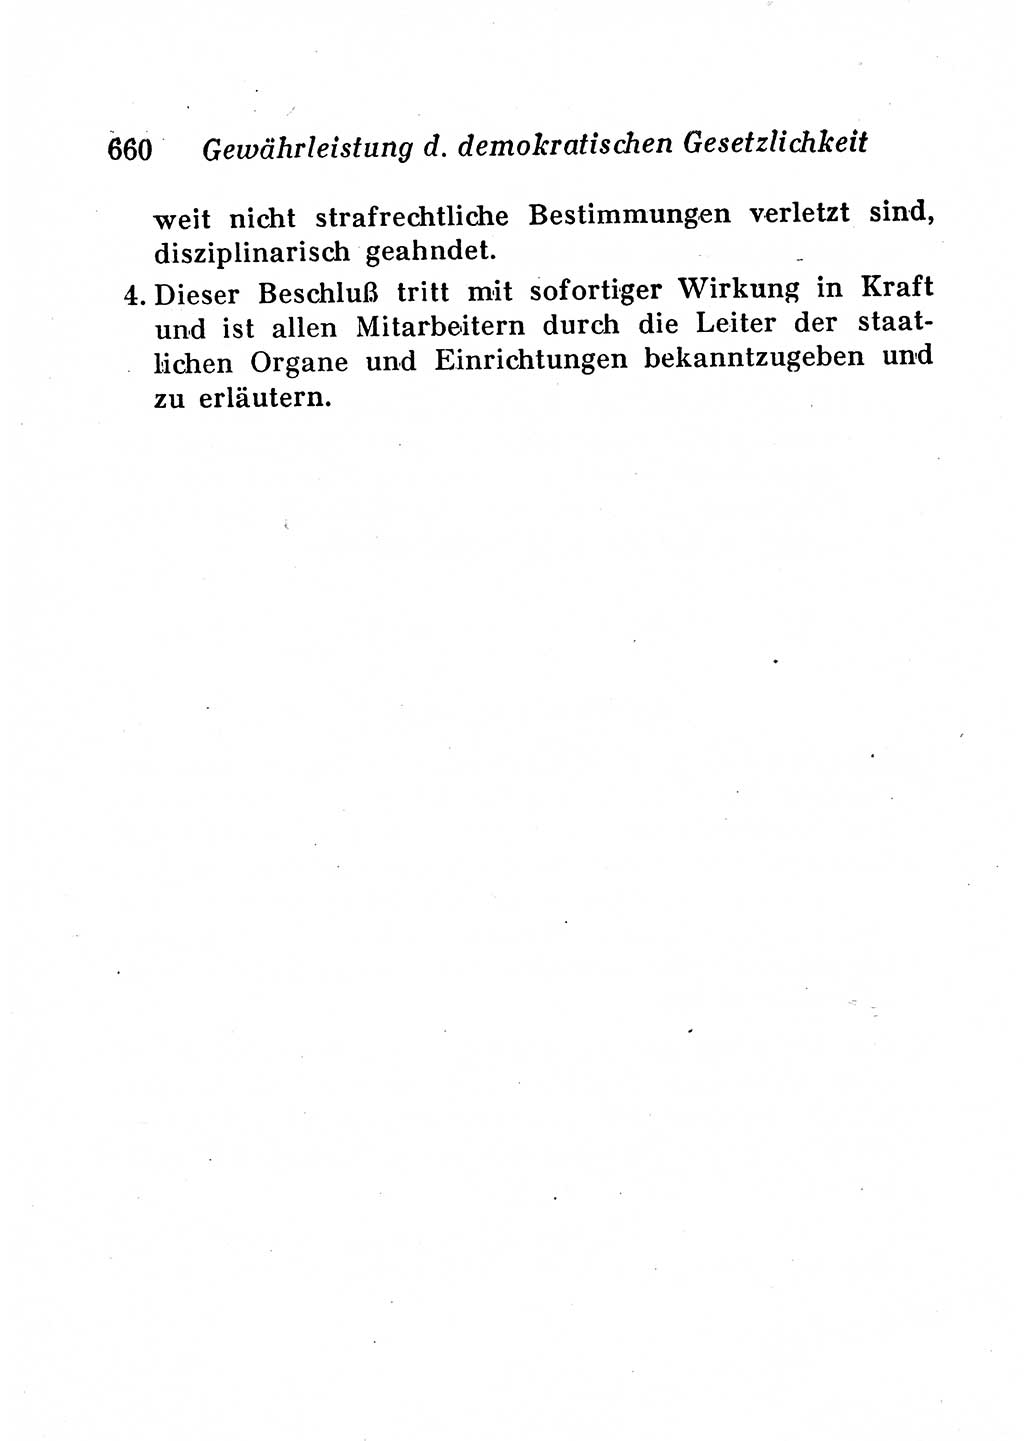 Staats- und verwaltungsrechtliche Gesetze der Deutschen Demokratischen Republik (DDR) 1958, Seite 660 (StVerwR Ges. DDR 1958, S. 660)